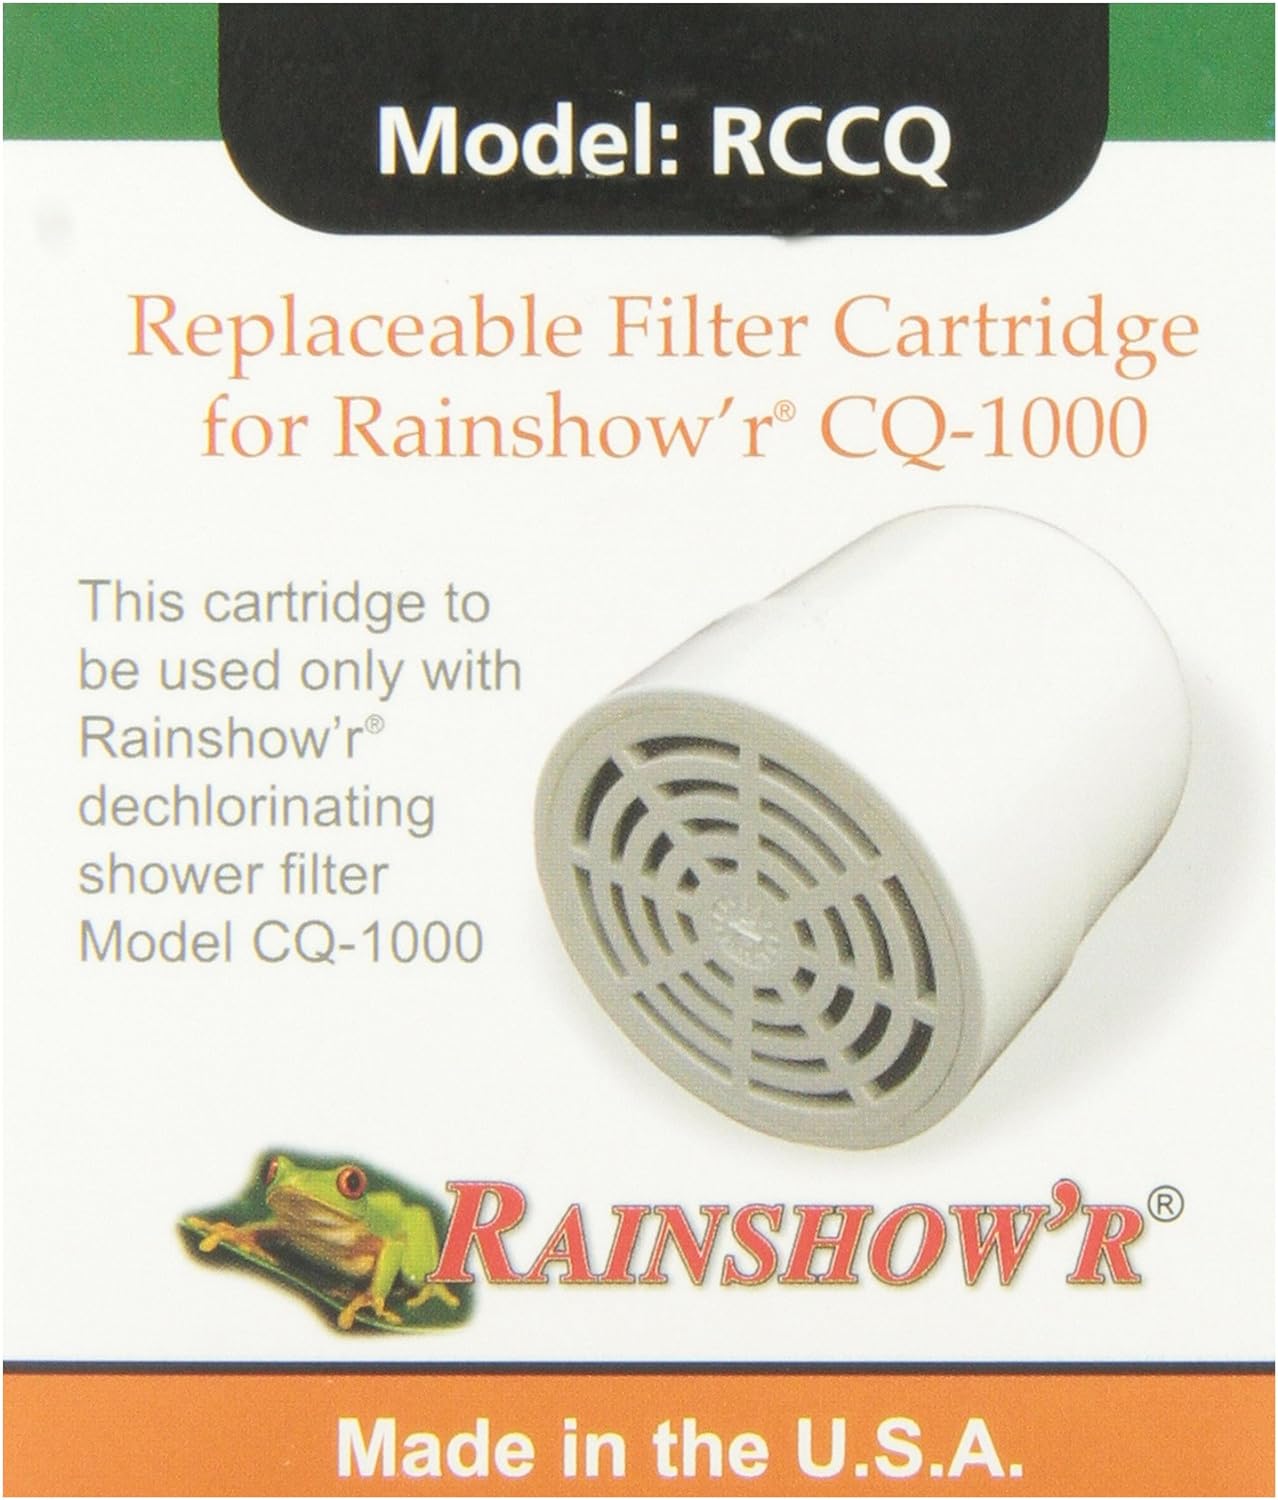 Rainshow'r Rainshower -RCCQ-A CQ1000 Filter Replacement Cartridge for Shower Filter